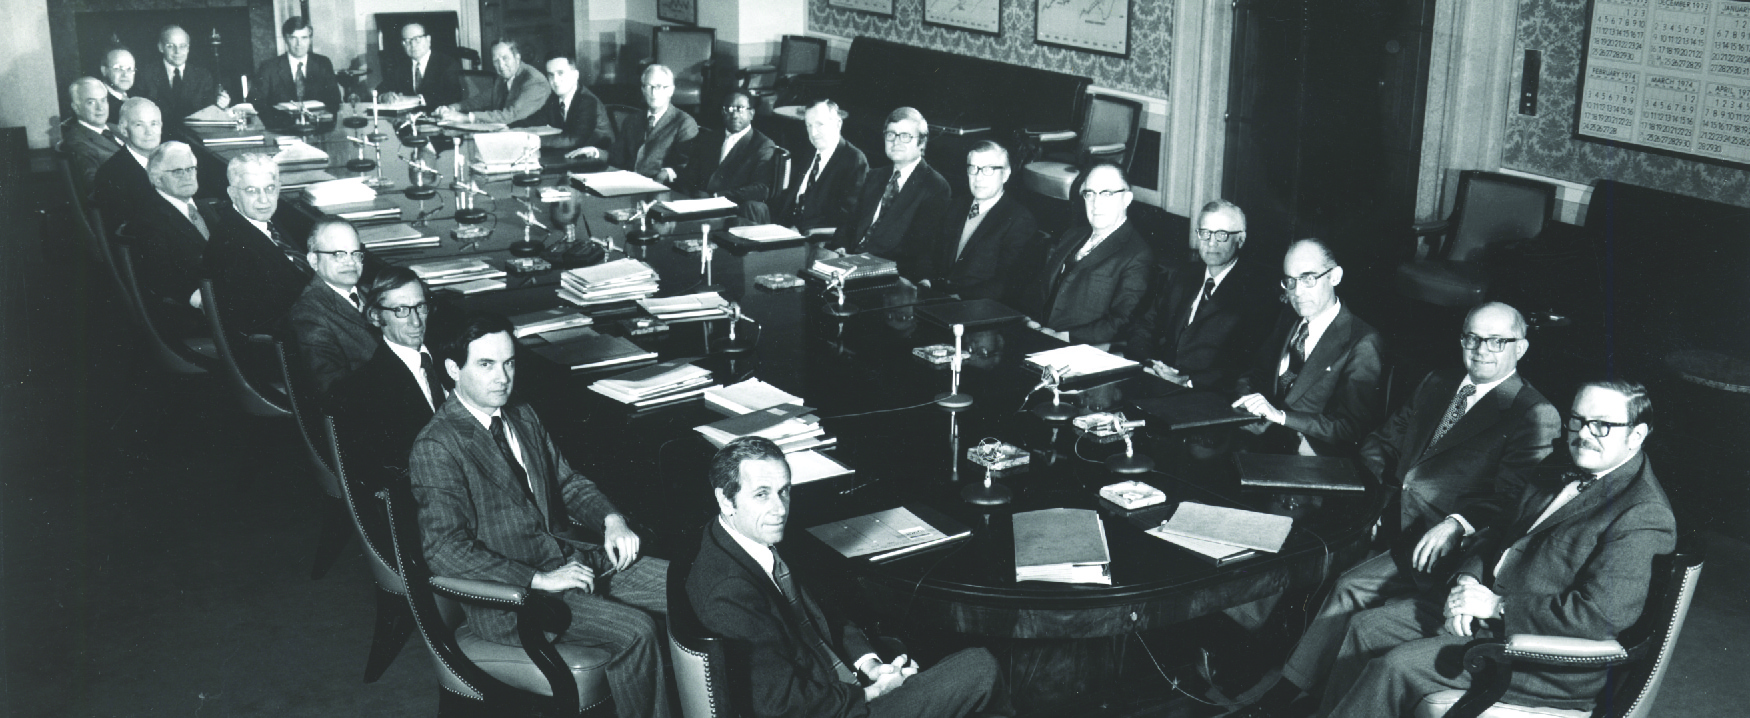 这张照片显示了二十三名白人和一名身穿西装的黑人坐在一张会议室式的大桌子旁。